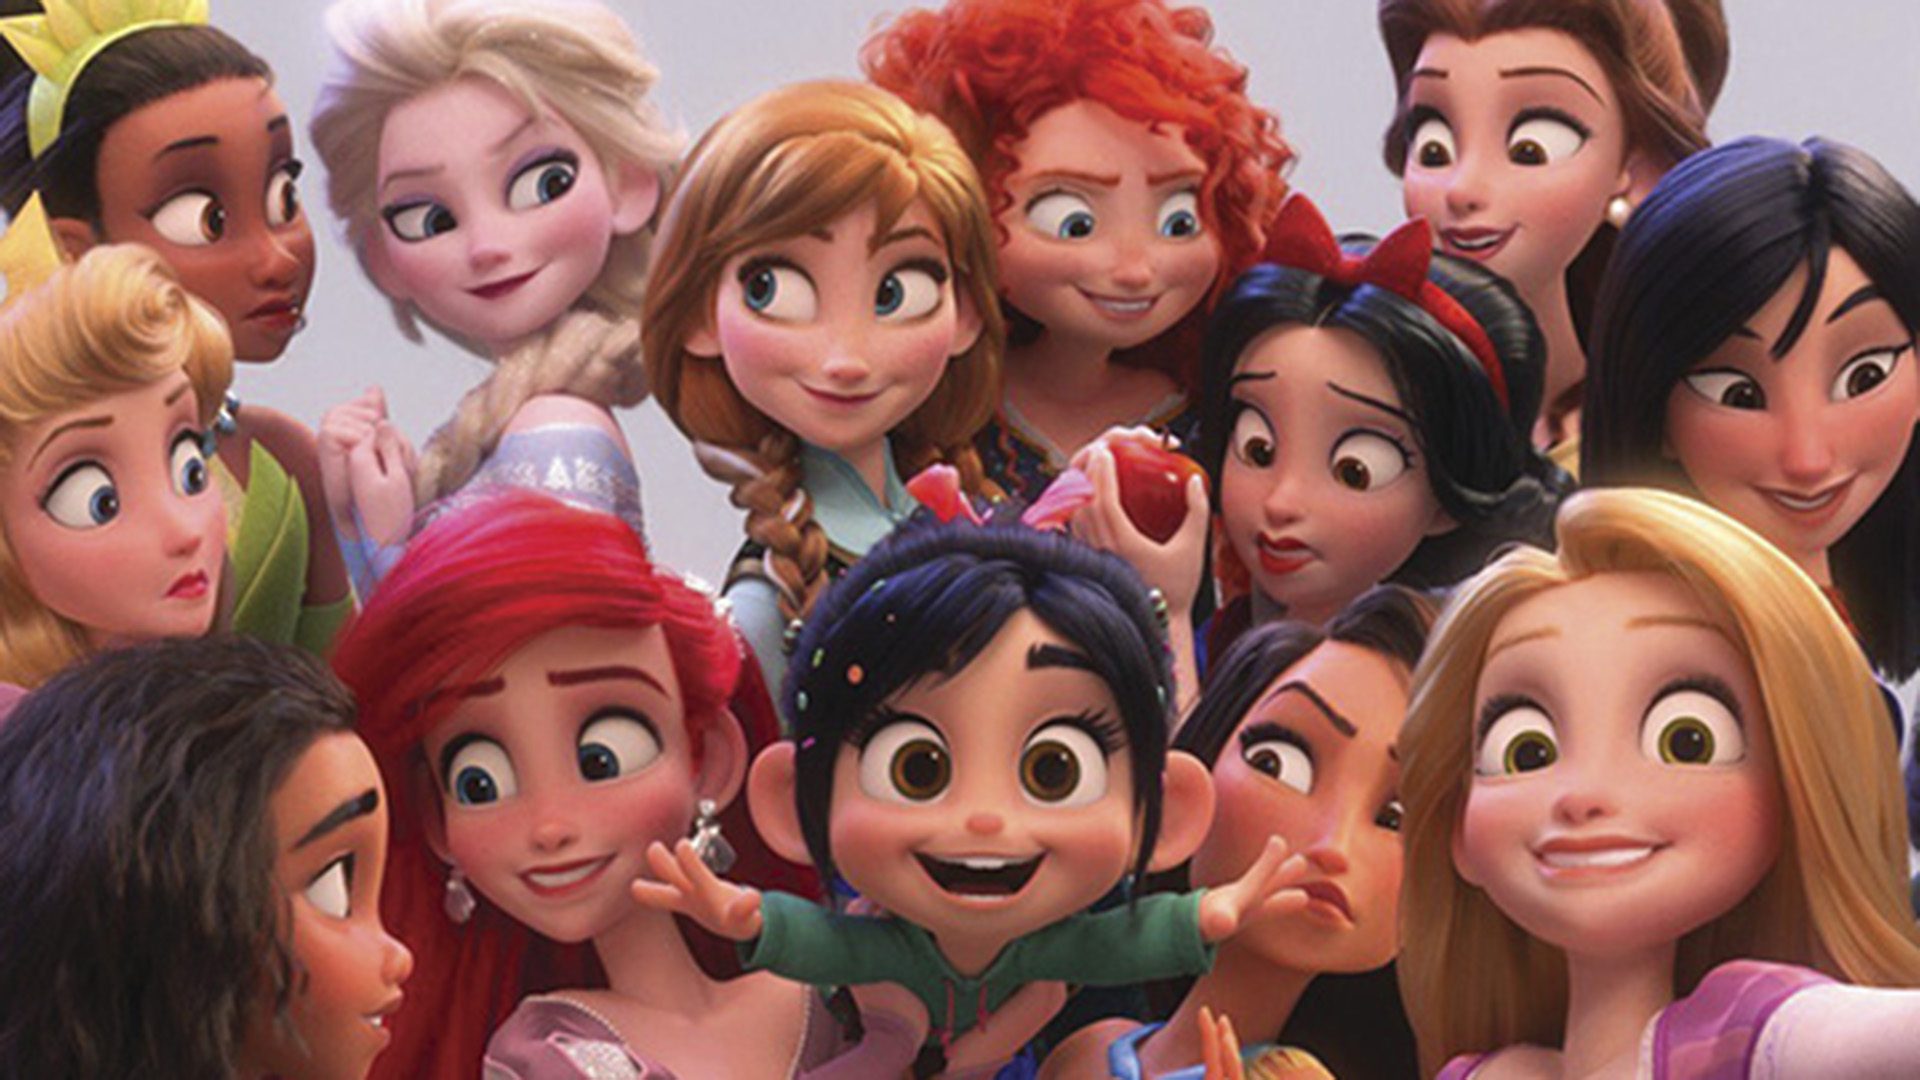 MUNDO | Disney lança campanha “Separados mas juntos”!